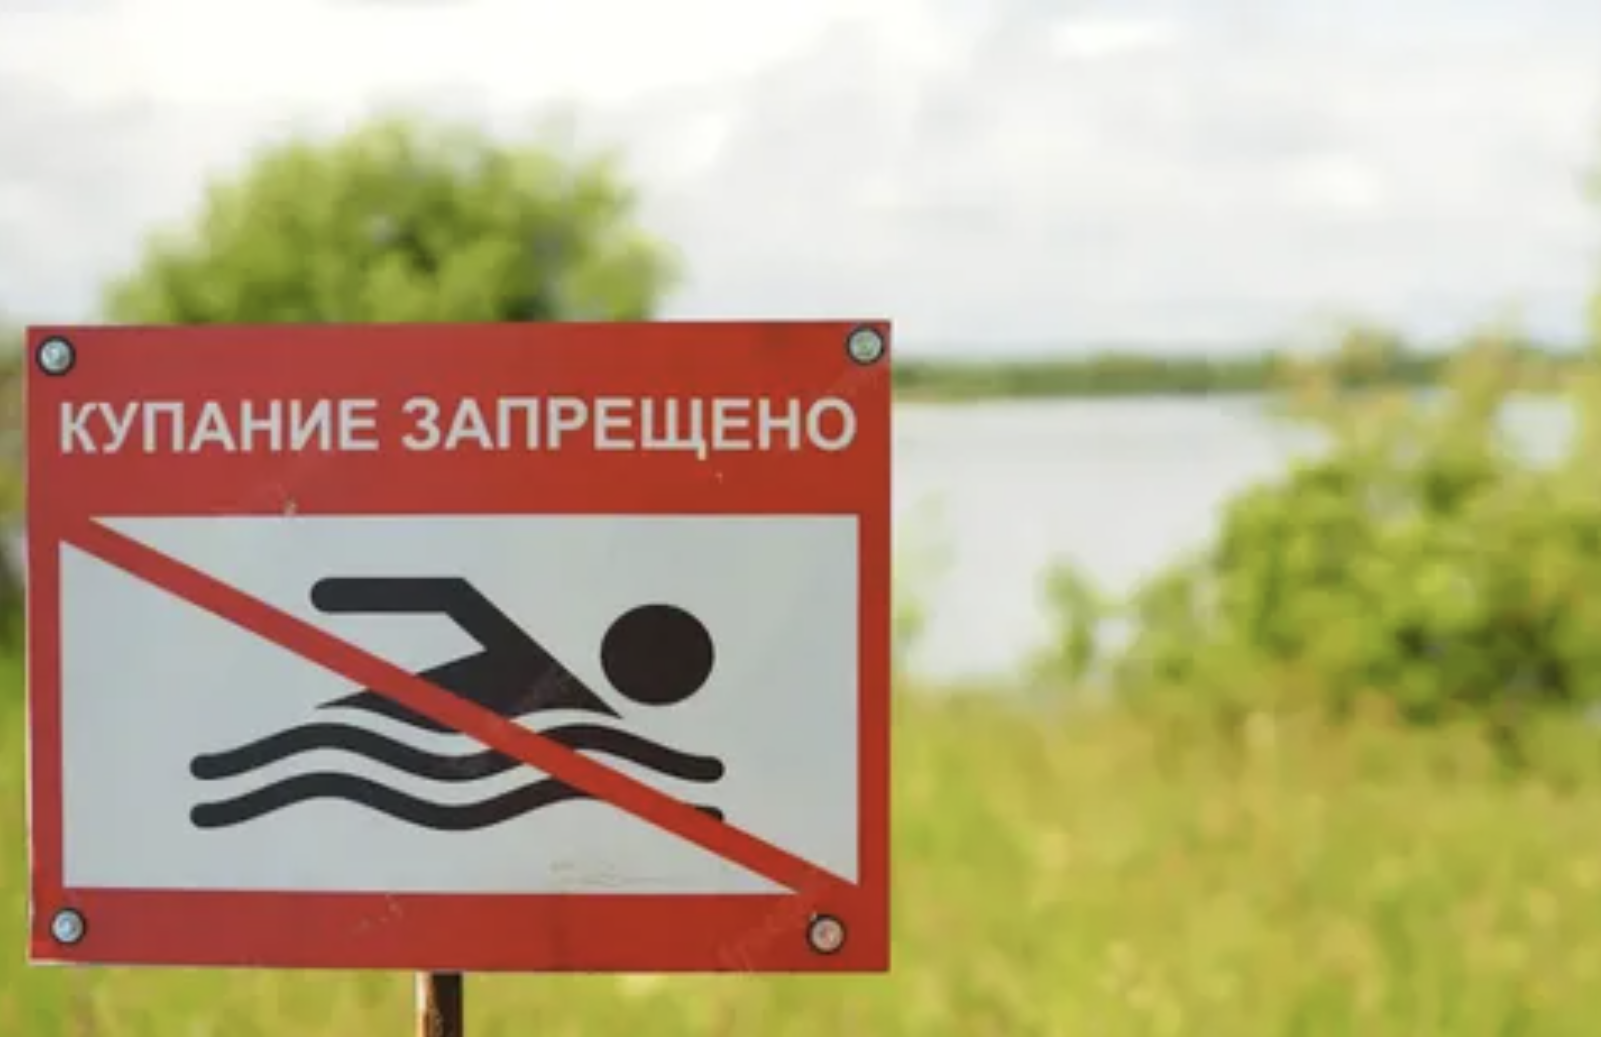 Купаться запрещено картинки. Купаться запрещено. Купание запрещено табличка. Таблички о запрете купания. Знак «купаться запрещено».